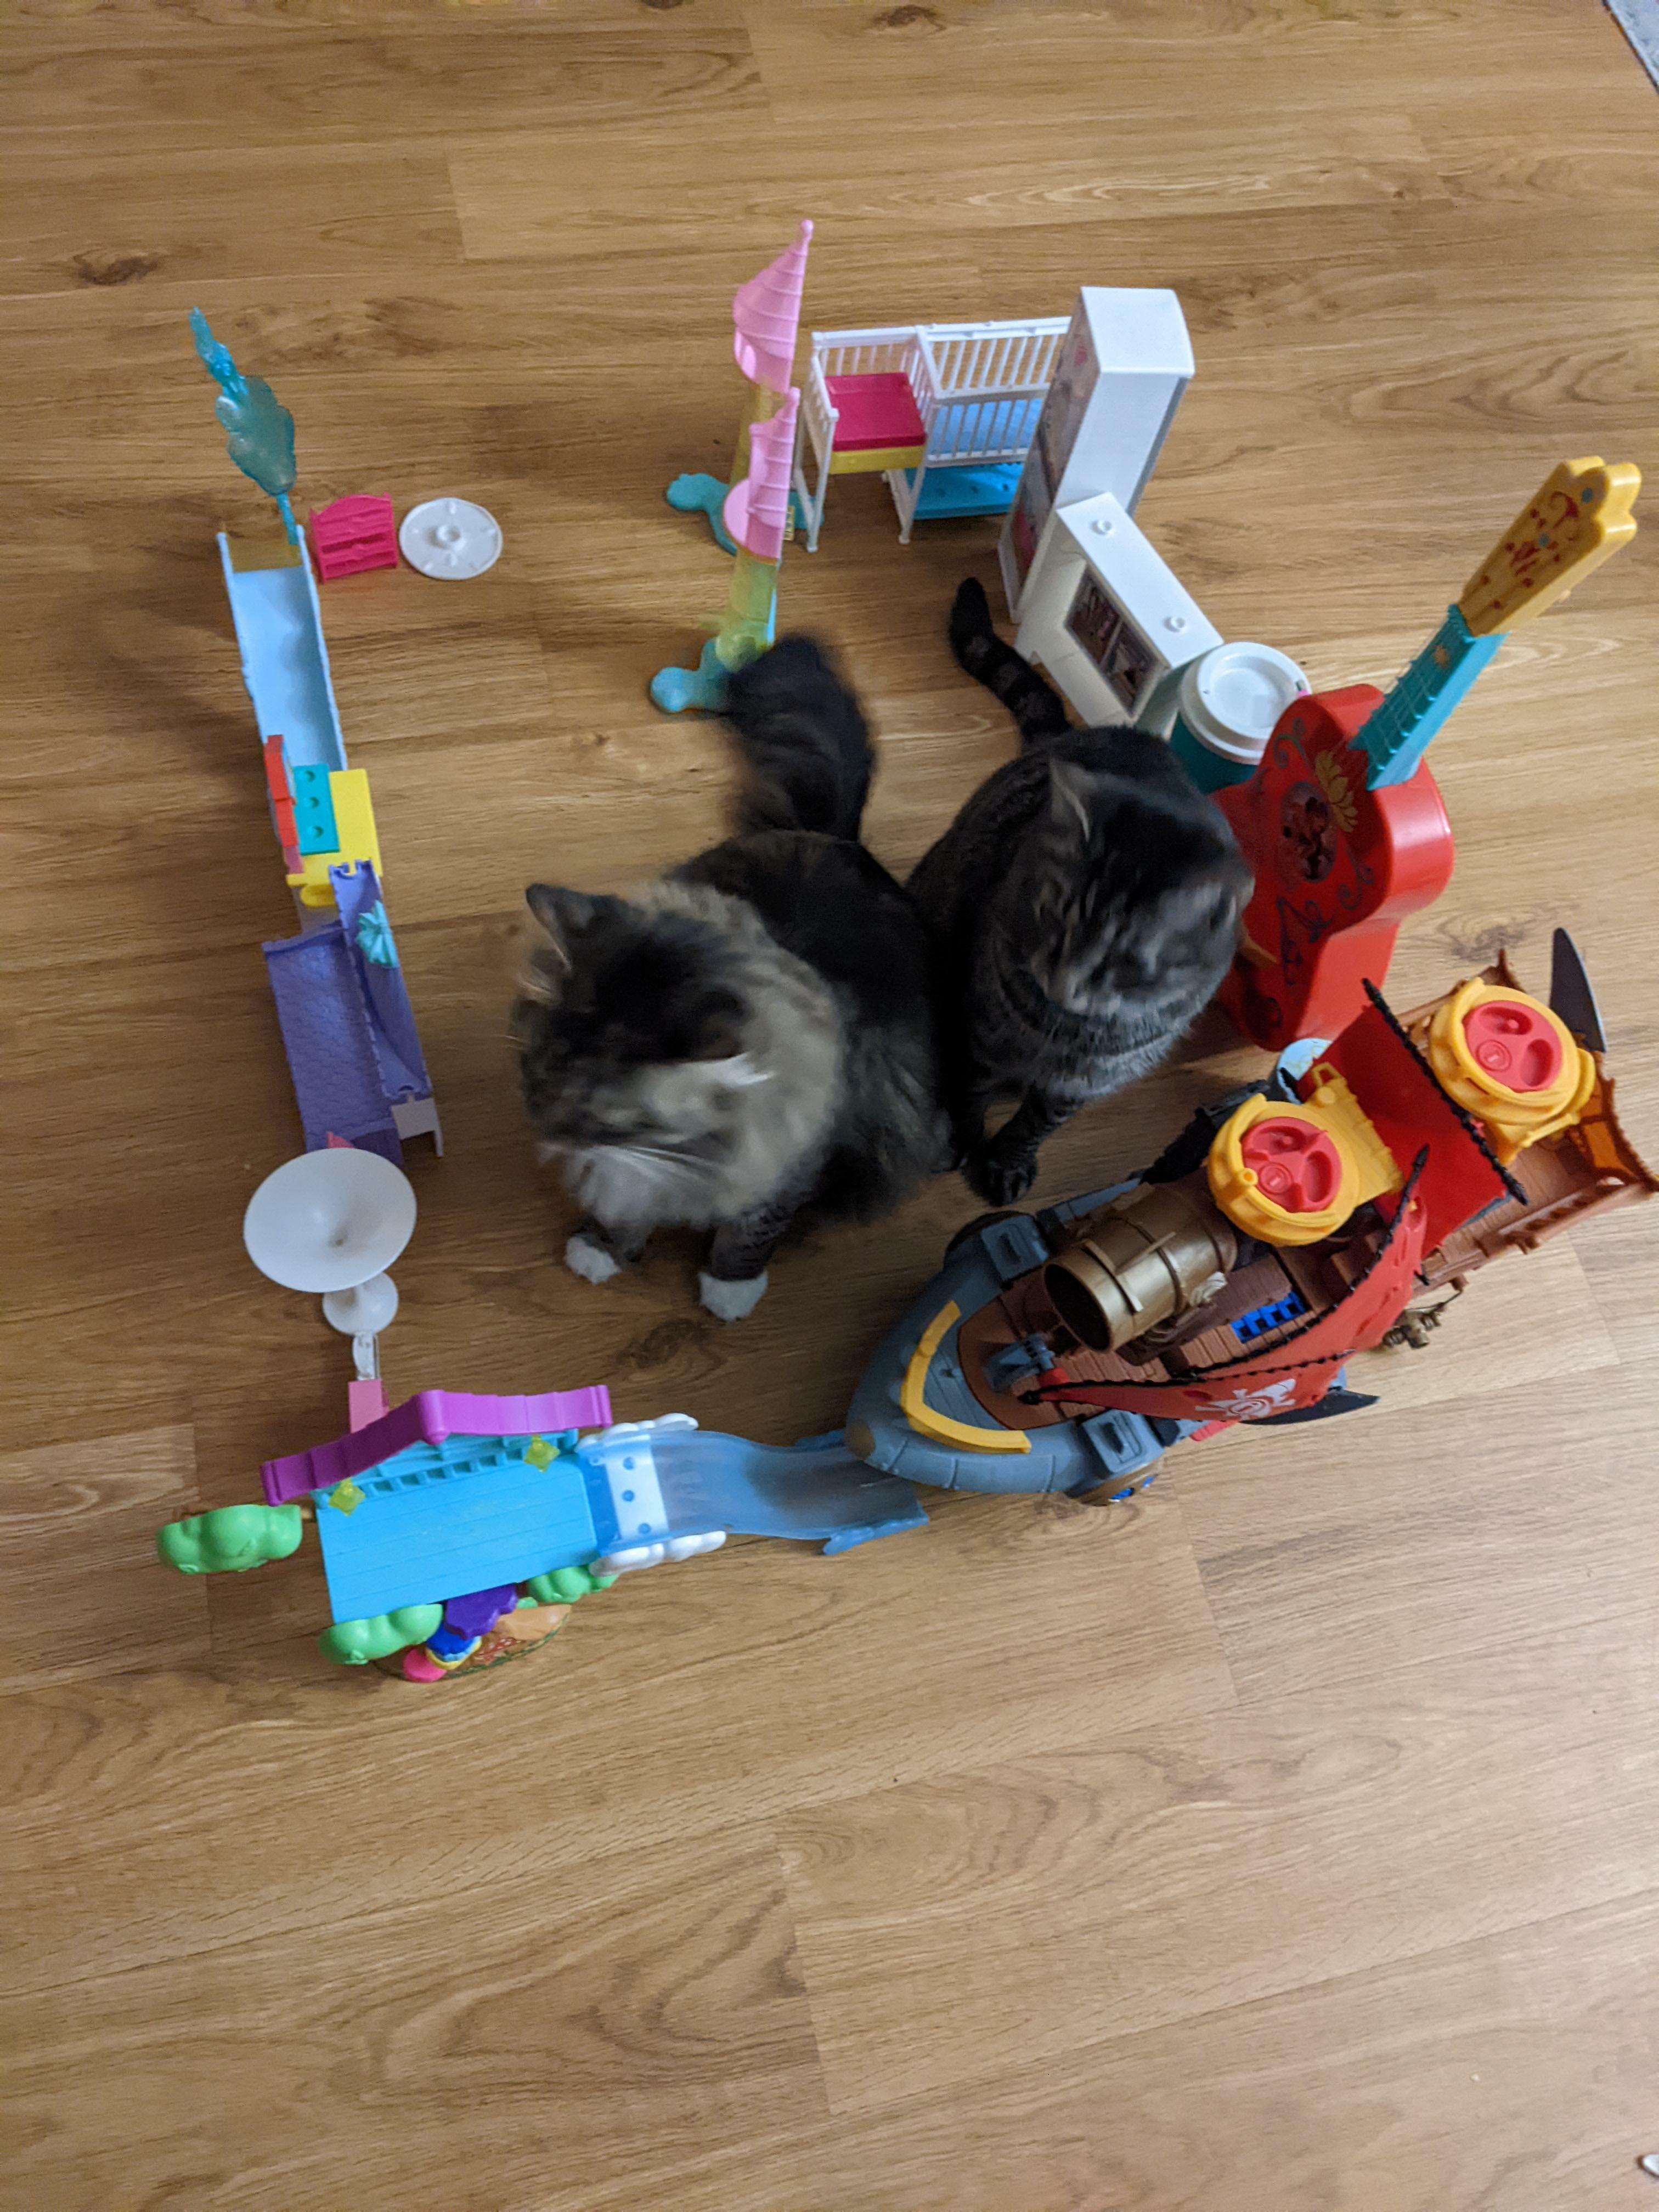 mon enfant a construit son premier piège à chat aujourd'hui et en a attrapé 2